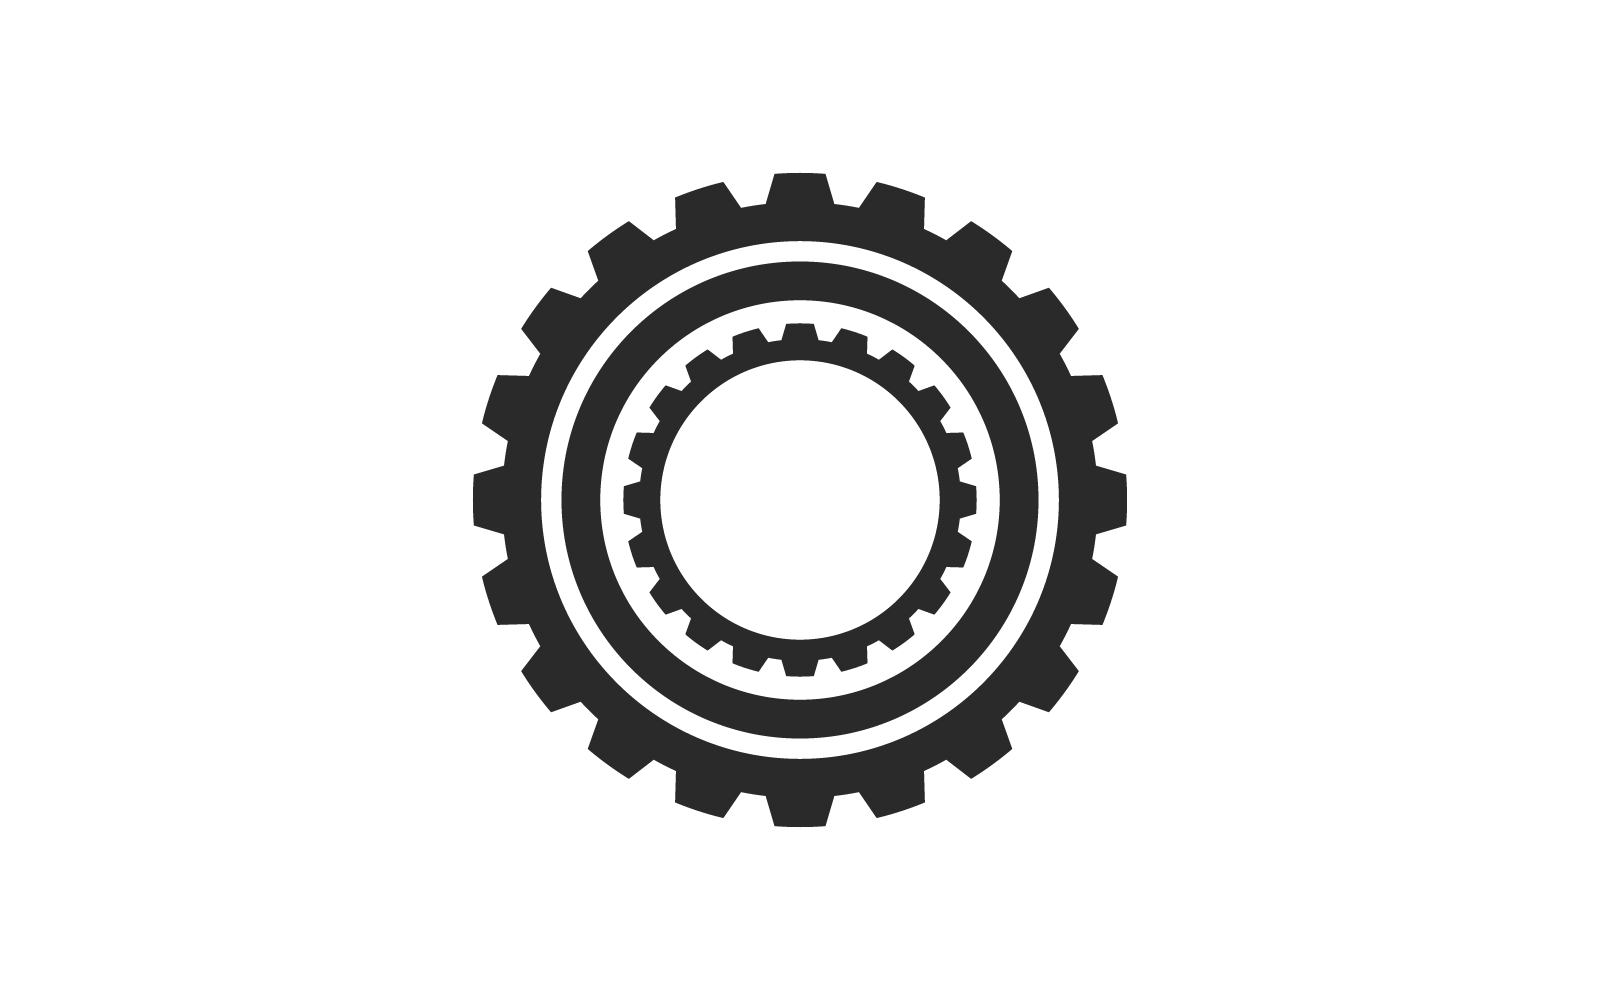 Gear logo illustration vector design